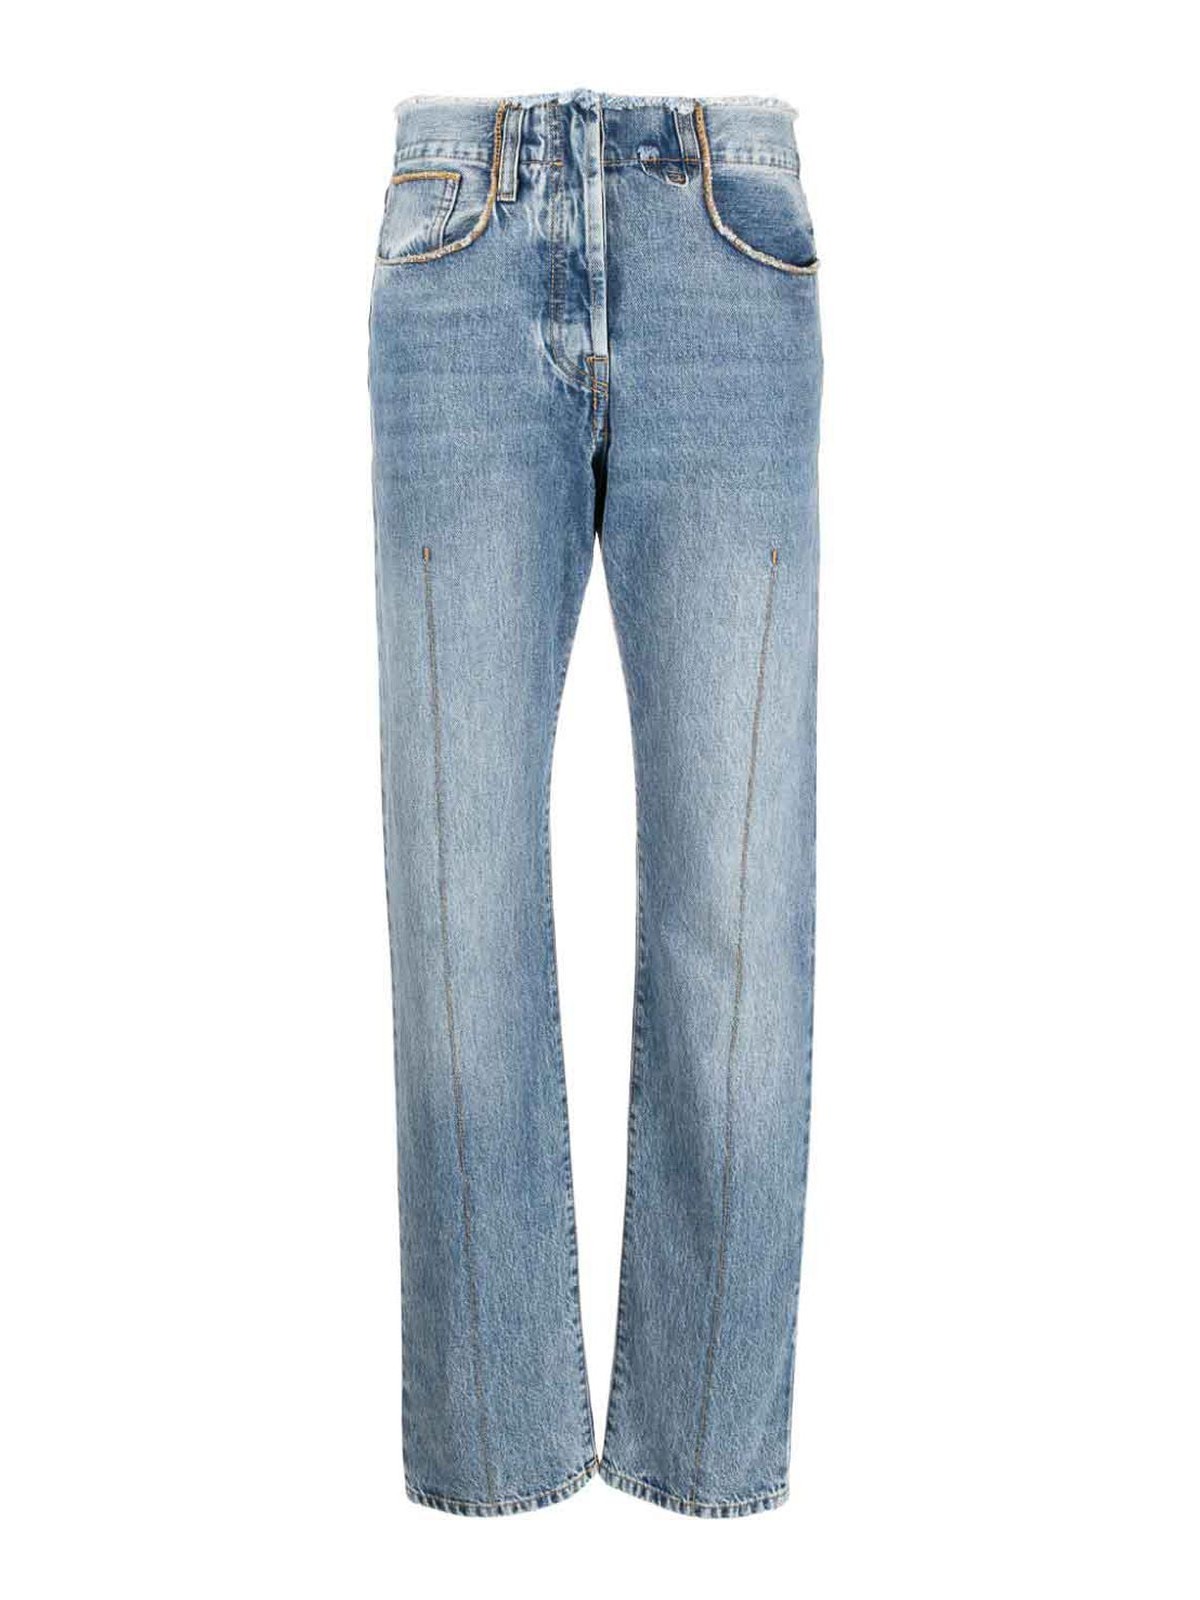 Bootcut jeans Jacquemus - Le de nimes linon jeans - 233DE030101531A